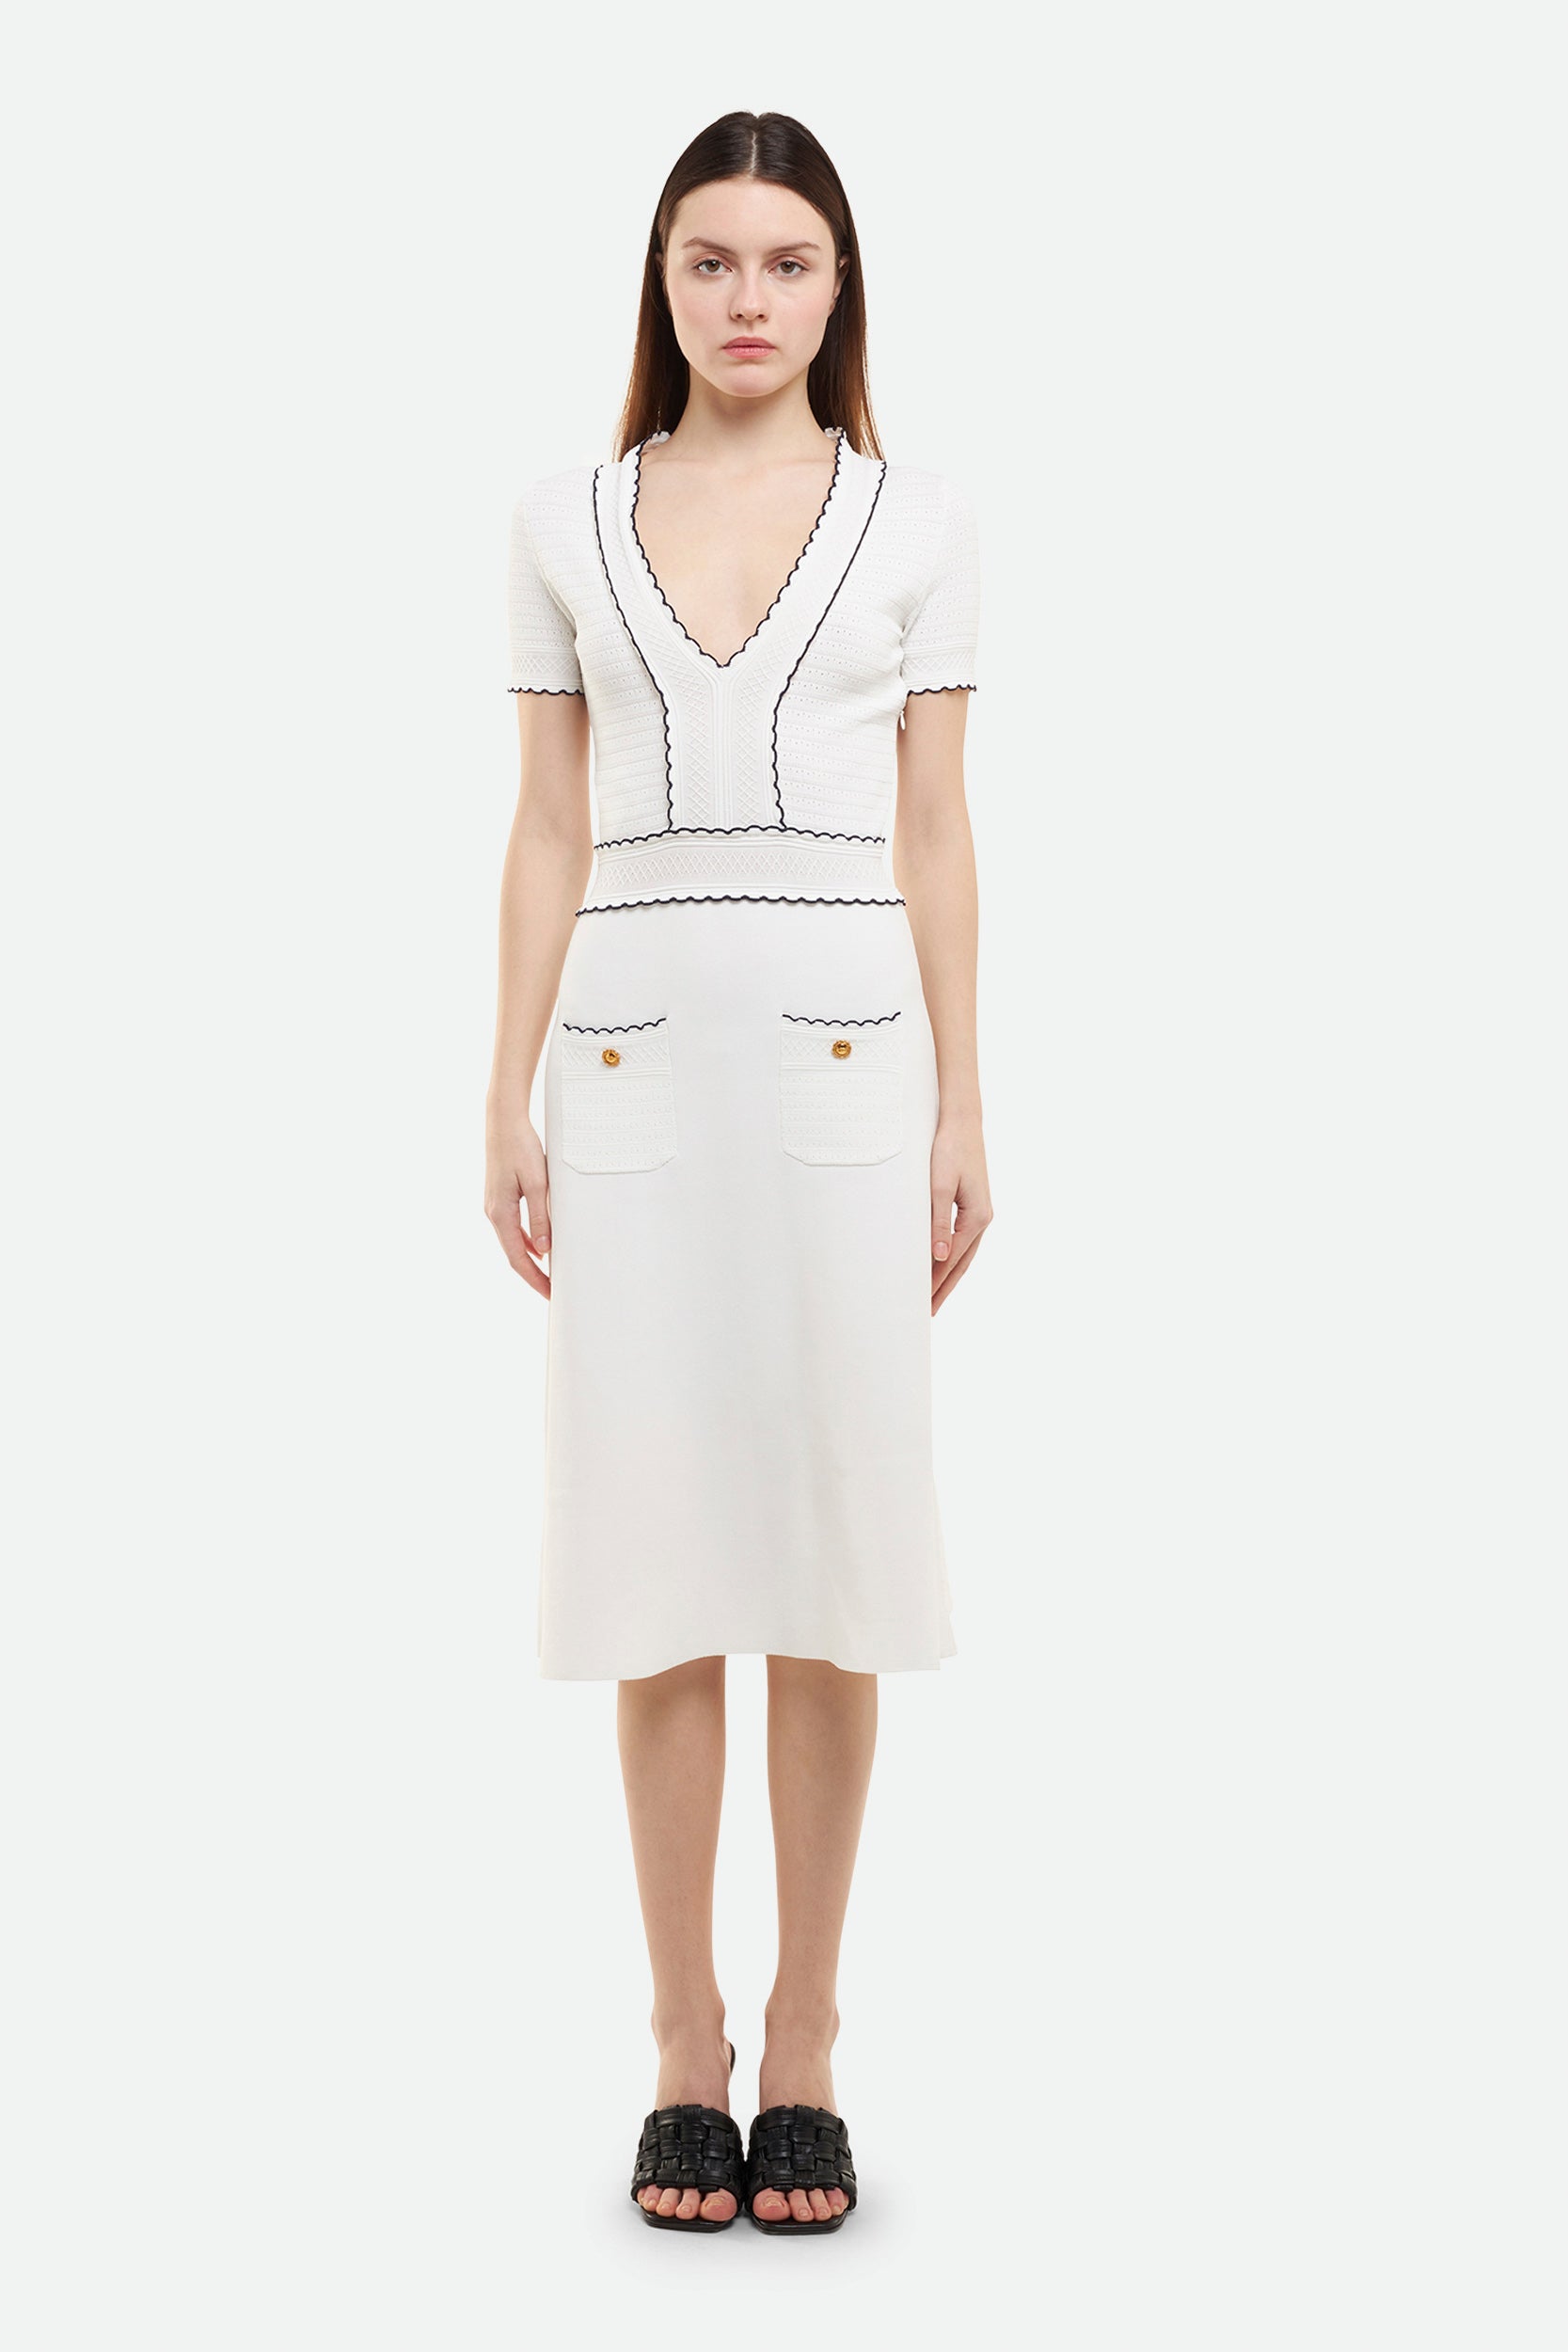 Weißes Kleid von Elisabetta Franchi